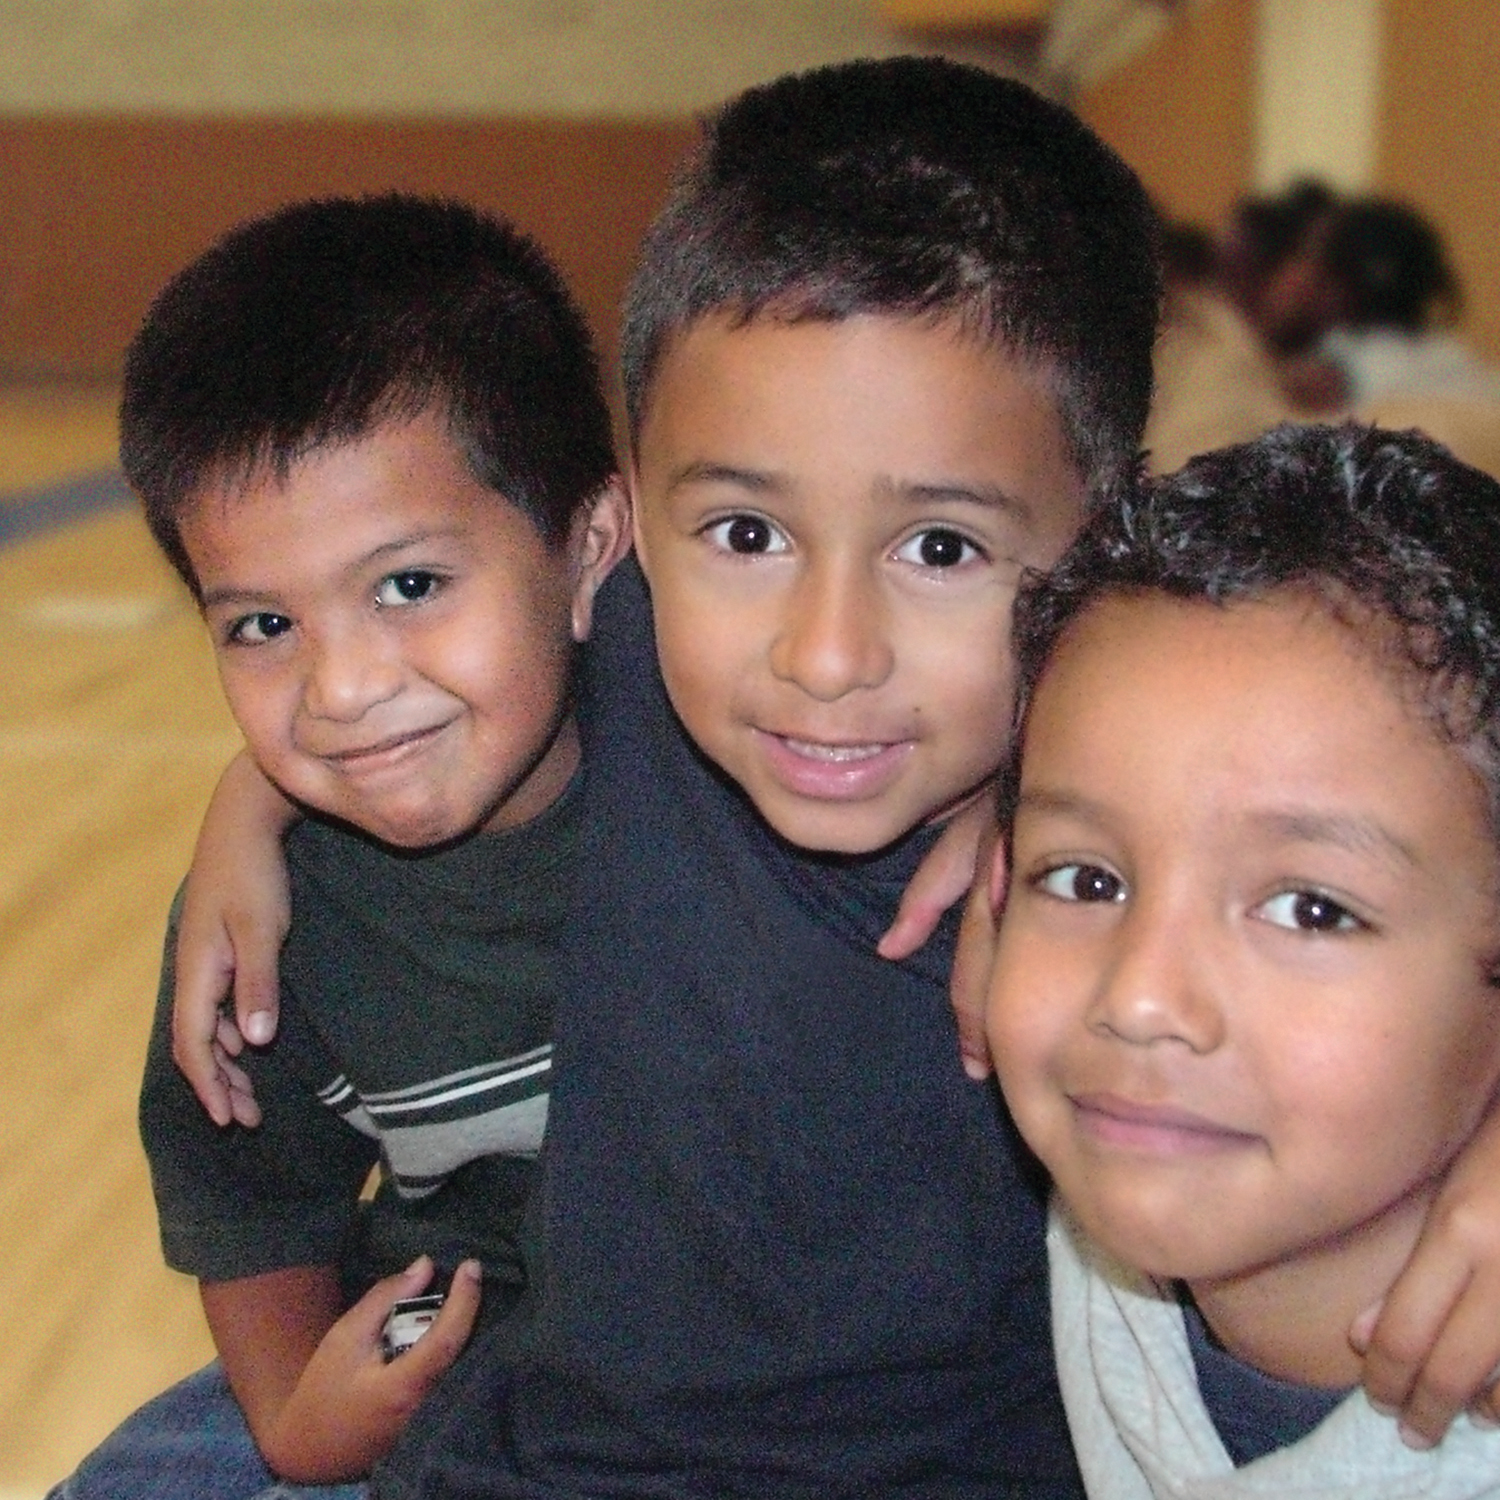 Three boys in a gymnasium